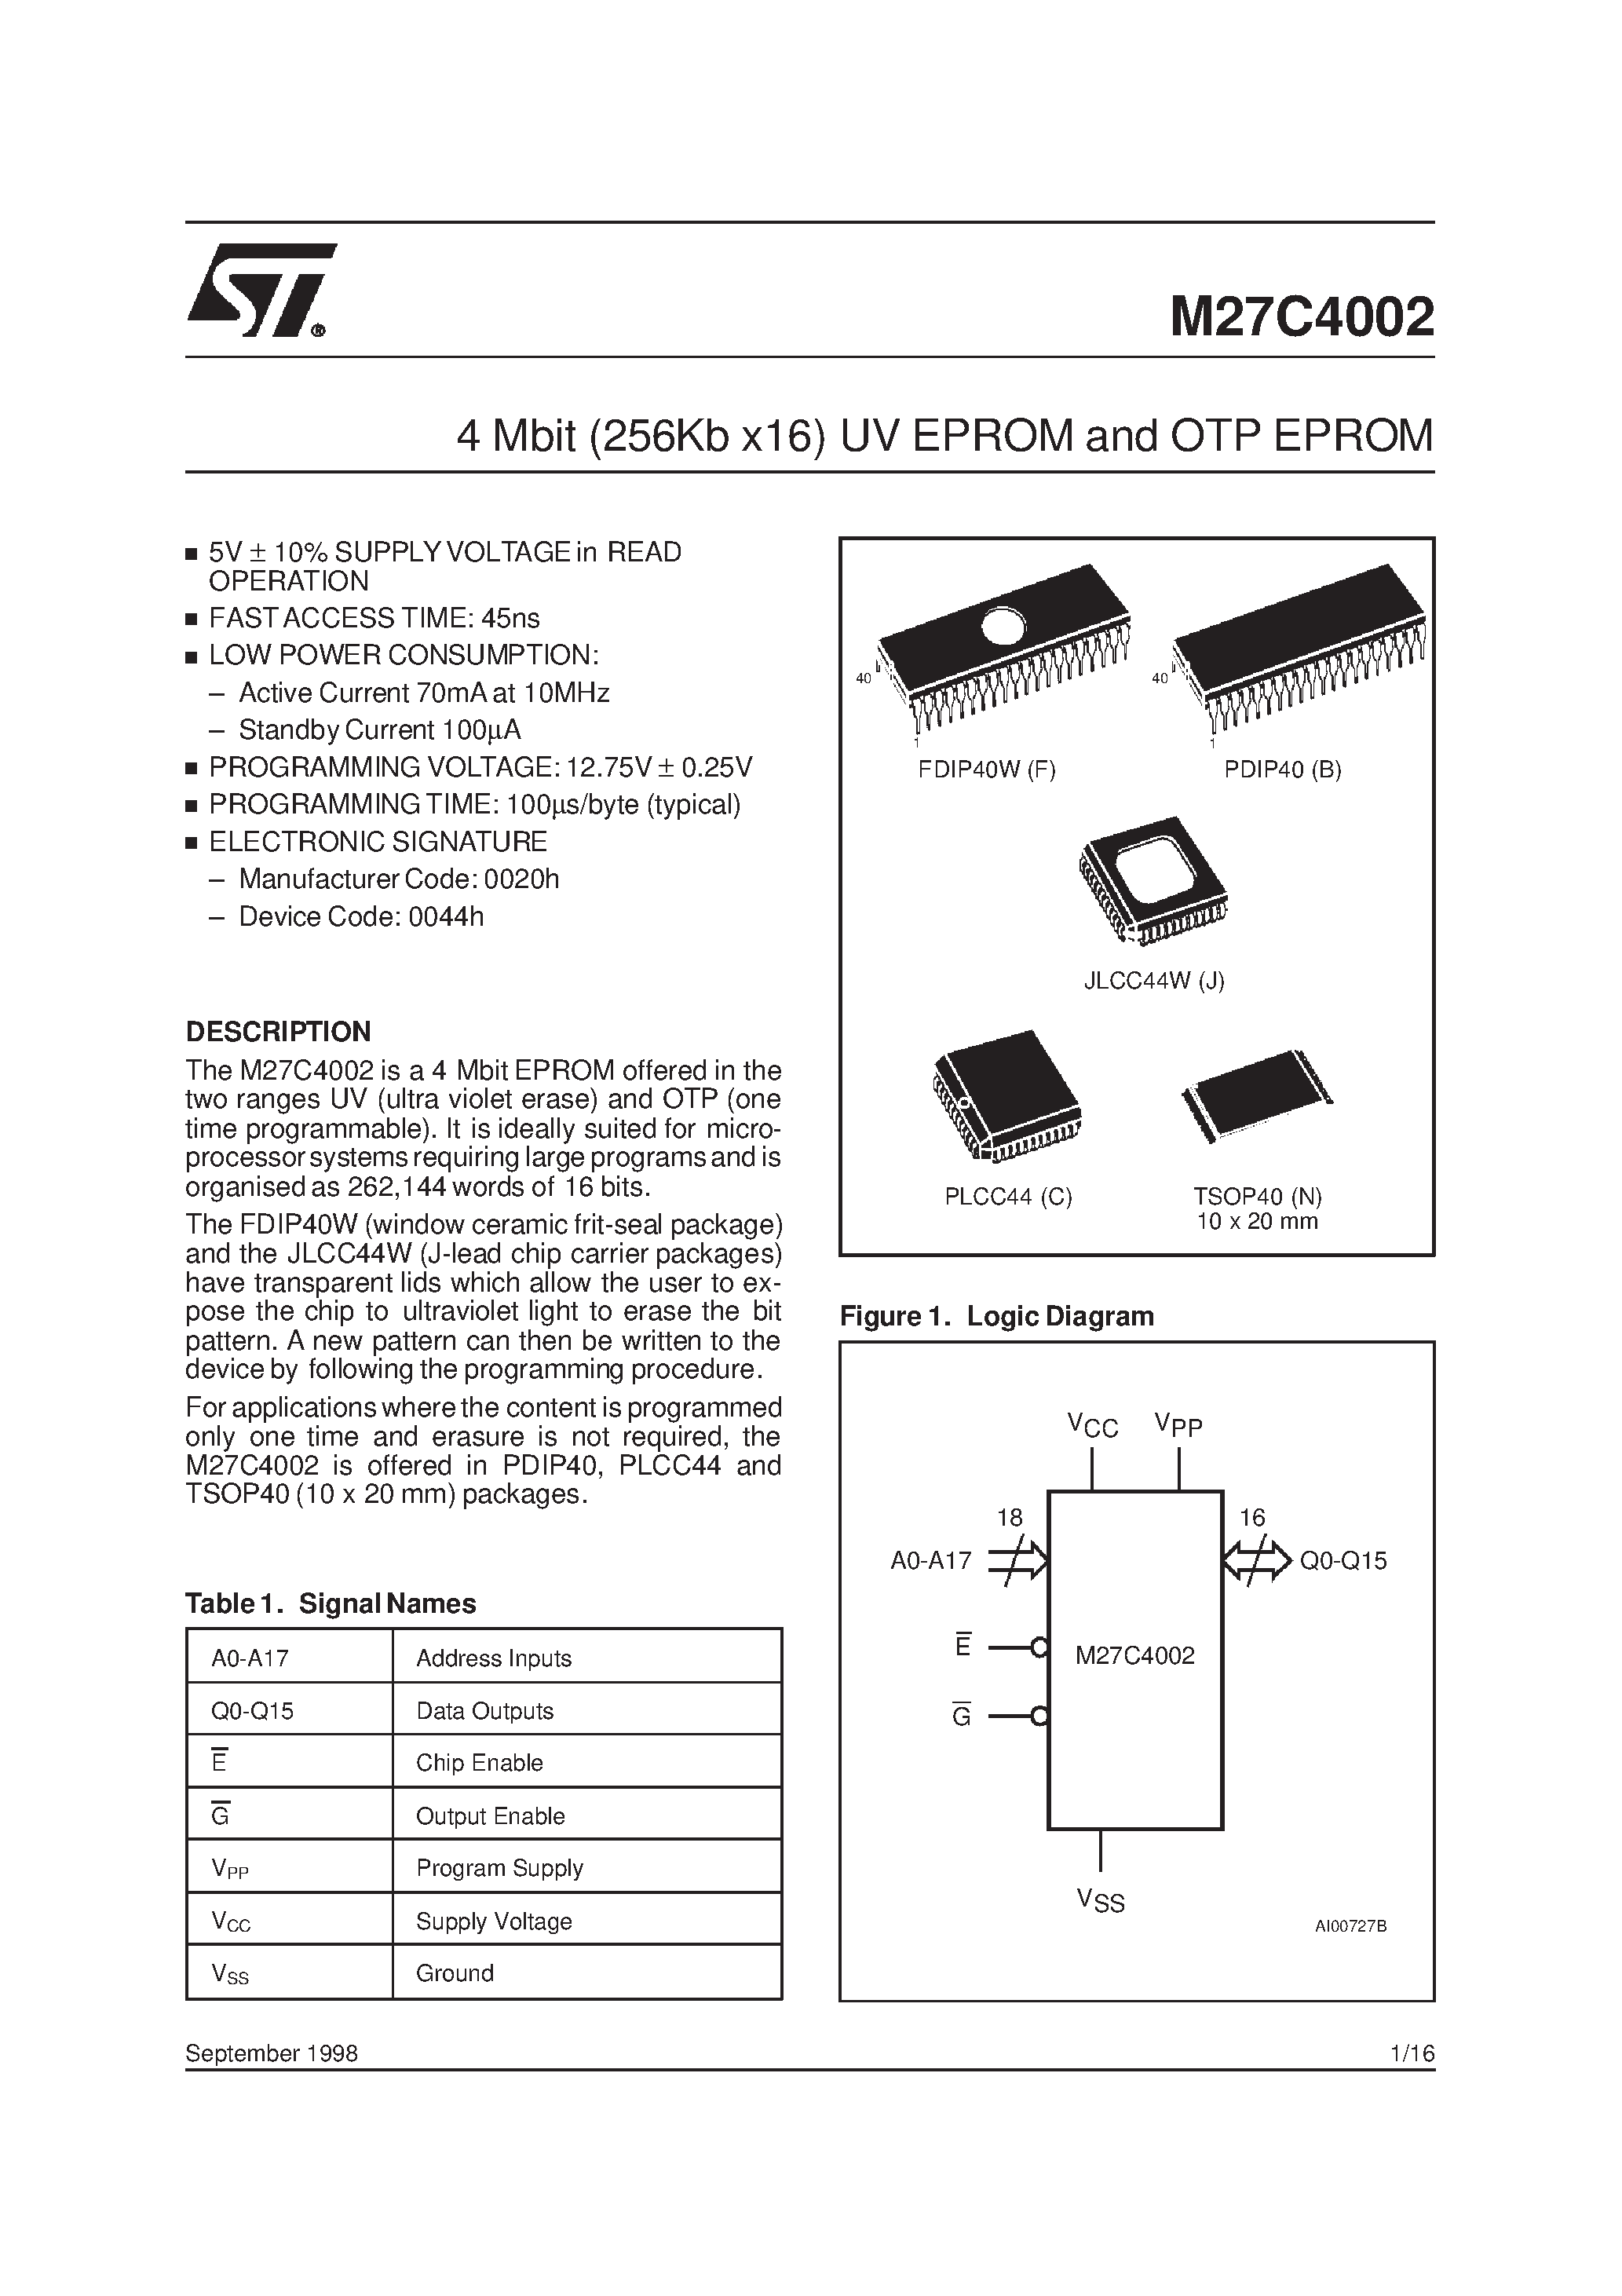 Datasheet M27C4002-10B6X - 4 Mbit 256Kb x16 UV EPROM and OTP EPROM page 1